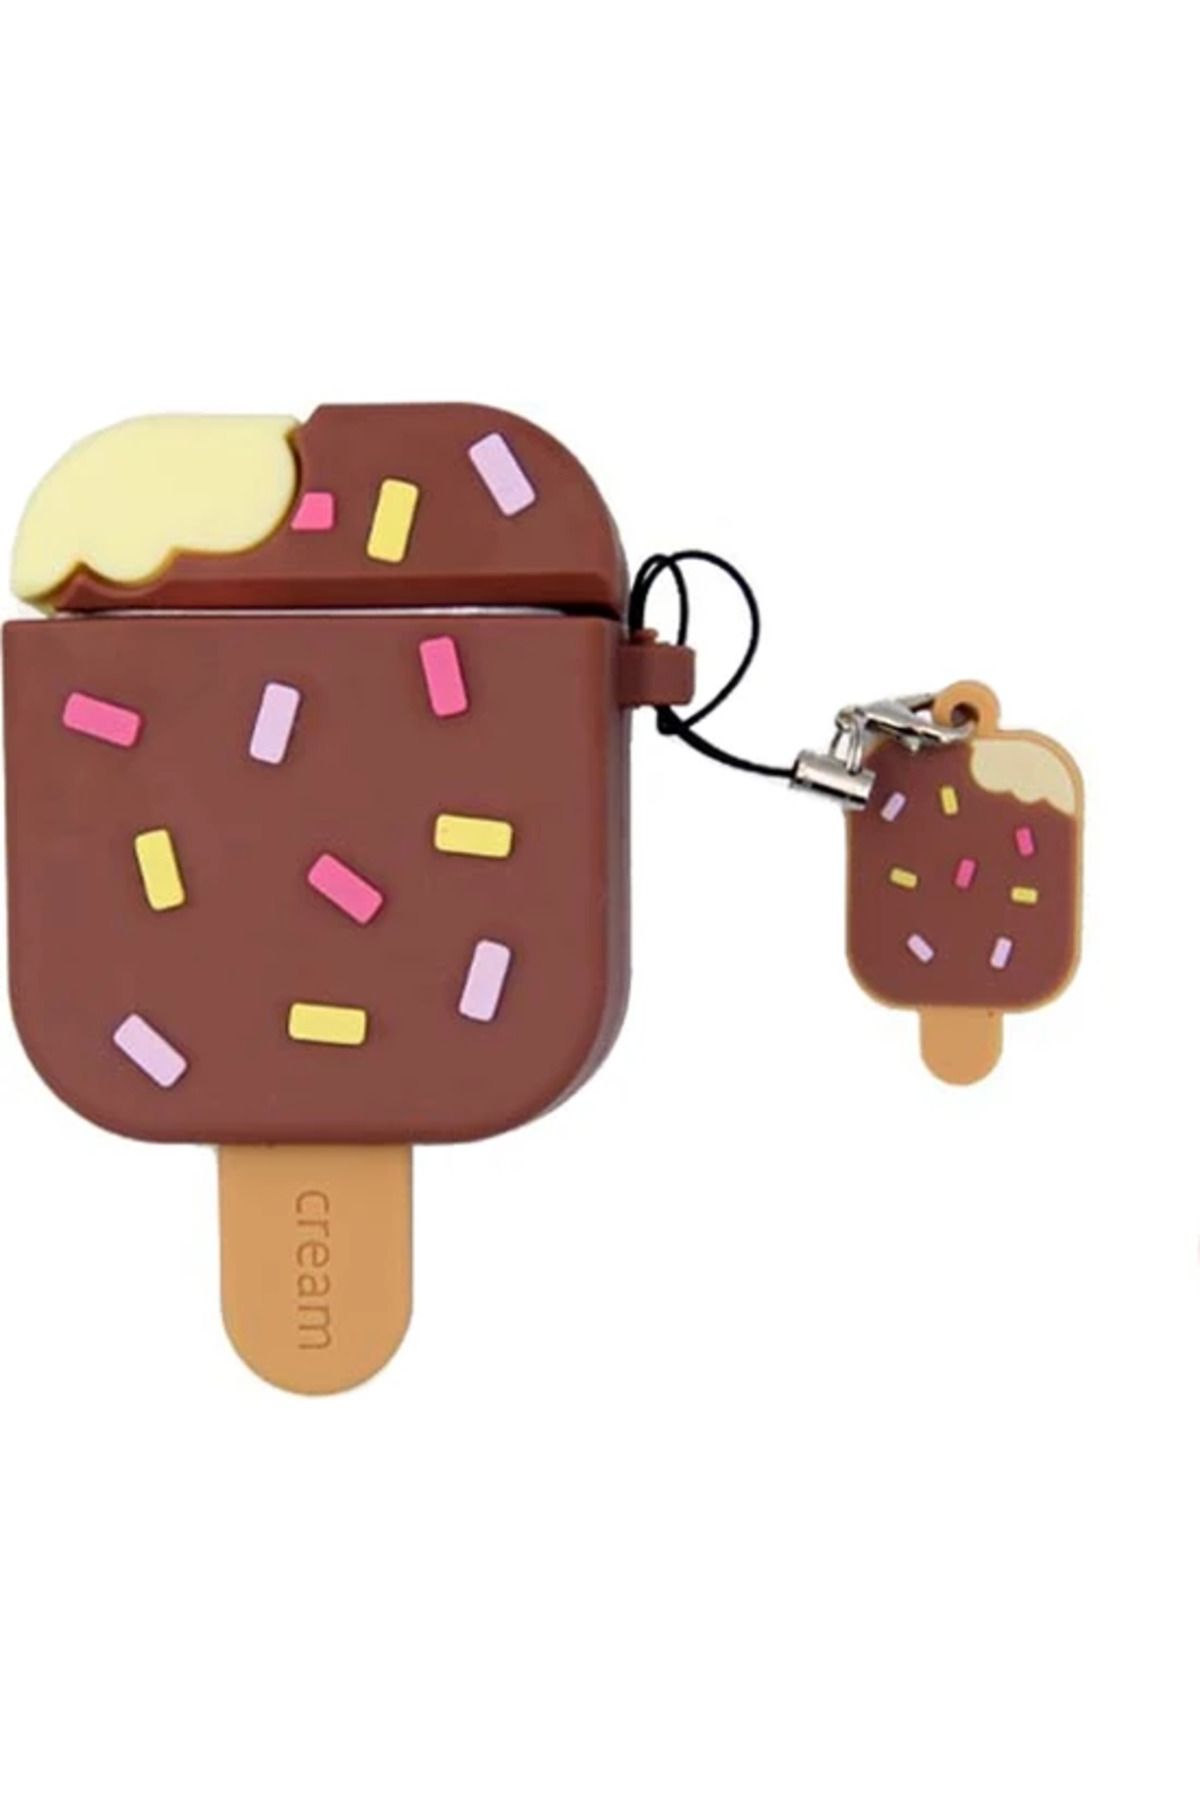 HappyCase Air pods 1 ve 2. nesil Uyumlu Kulaklık Koruyucu 3D Silikon Kılıf kahverengi dondurma